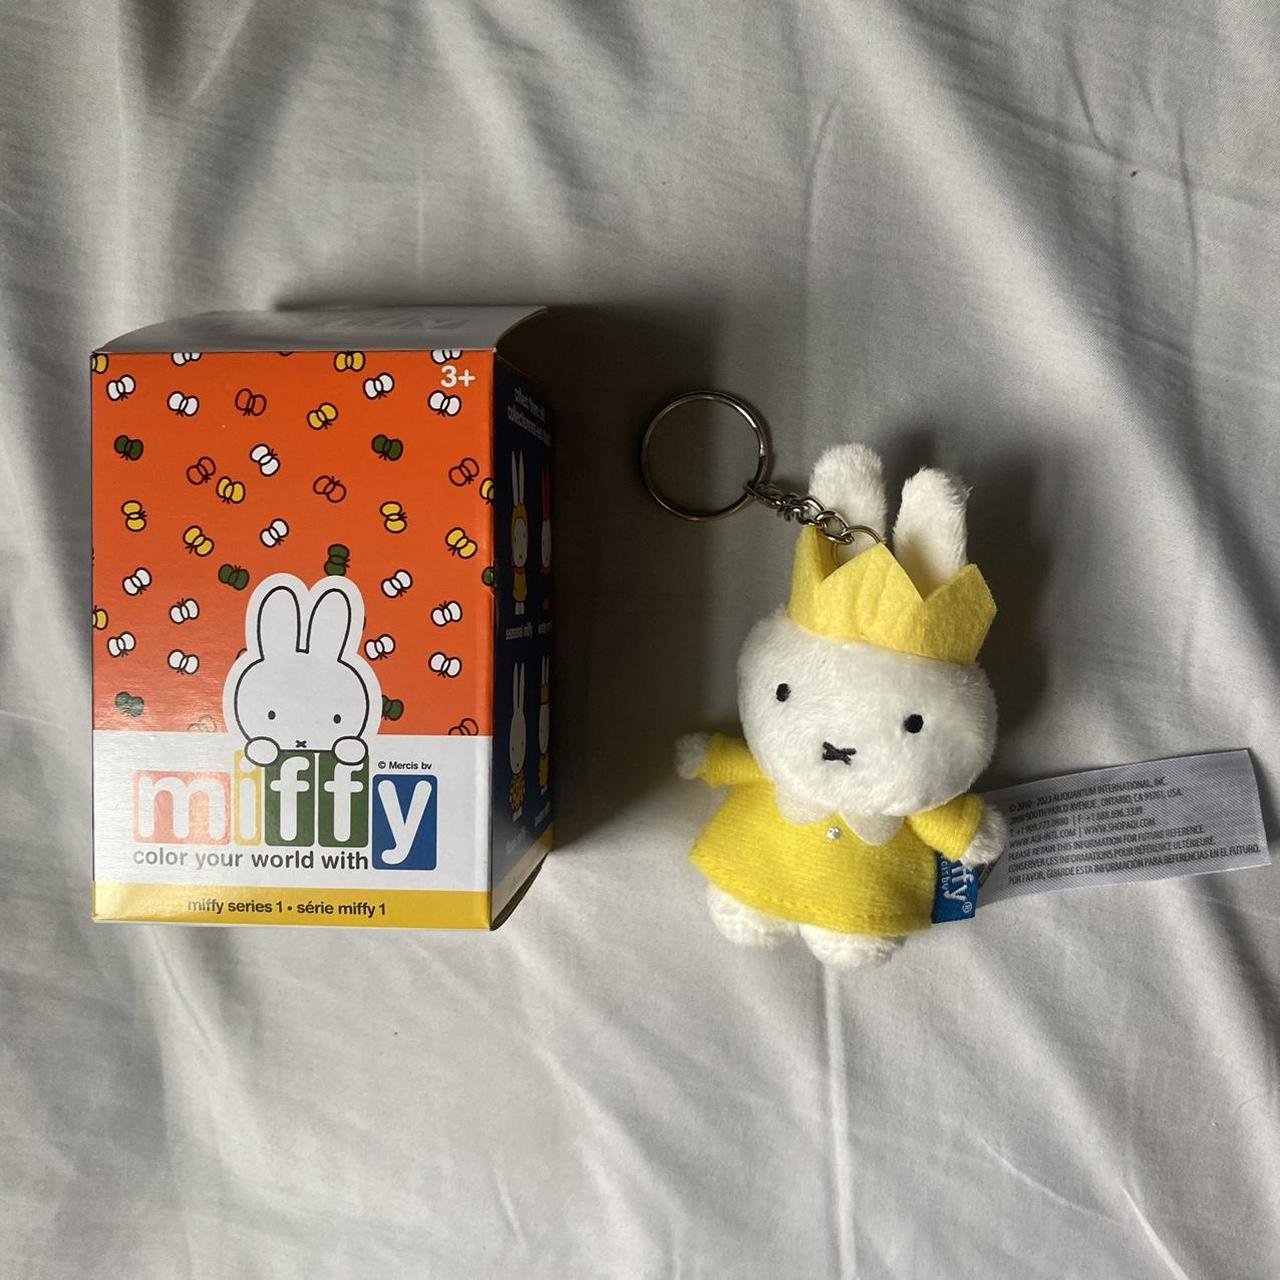 Squishy Miffy keychain (brand new) - Depop